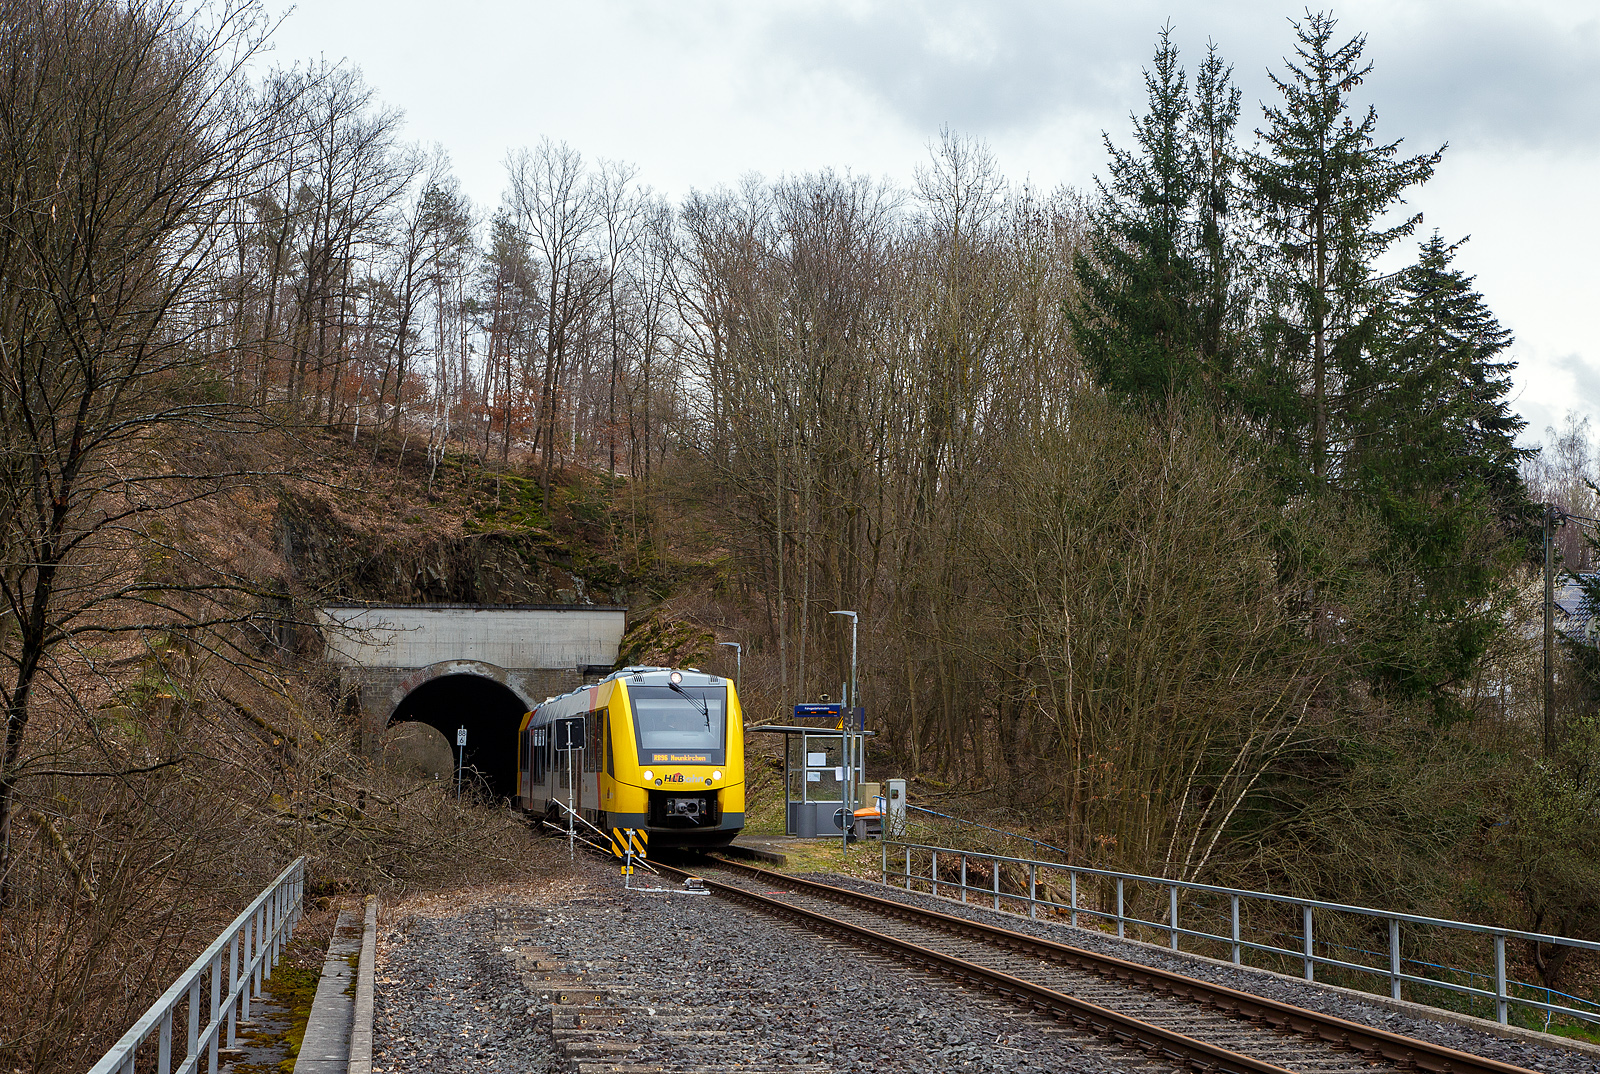 Nun fahren die Triebwagen der HLB RB 96 „Hellertalbahn“ auch endlich wieder den Bahnhof Herdorf an. Leider ist aber dann in Herdorf am Hp Königstollen Schluss, ab dort gibt es dann von und nach Betzdorf (Sieg) SEV. Nach dem Hangrutsch (Felssturz) am 23. Dezember 2022 in Herdorf kurz hinter dem Hp  Königsstollen (bei km 88,4), ist der Abschnitt nach Betzdorf weiterhin bis mindestens bis zum kleinen Fahrplanwechsel am 11. Juni 2023, gesperrt. Aber diese ungewöhnliche Führung bis zum Hp  Königsstollen, über den Bahnhof Herdorf hinaus ist nötig, denn in den nächsten Tagen sollen die der Abriss und der Neubau der „Hellerbrücke“ der Hellerstraße (bei „Steinaus Eck“) beginnen und der SEV wäre so nur noch über Daaden oder Kirchen möglich.

Der VT 506 (95 80 1648 106-0 D-HEB / 95 80 1648 606-9 D-HEB), ein Alstom Coradia LINT 41 der neuen Generation / neue Kopfform, der HLB (Hessische Landesbahn GmbH) hat am 20.03.2023, als RB 96 „Hellertalbahn“ nach Betzdorf, die derzeitige Endstation Herdorf Hp Königstollen erreicht. Zwischen hier und Betzdorf (Sieg) gibt es dann nur SEV.